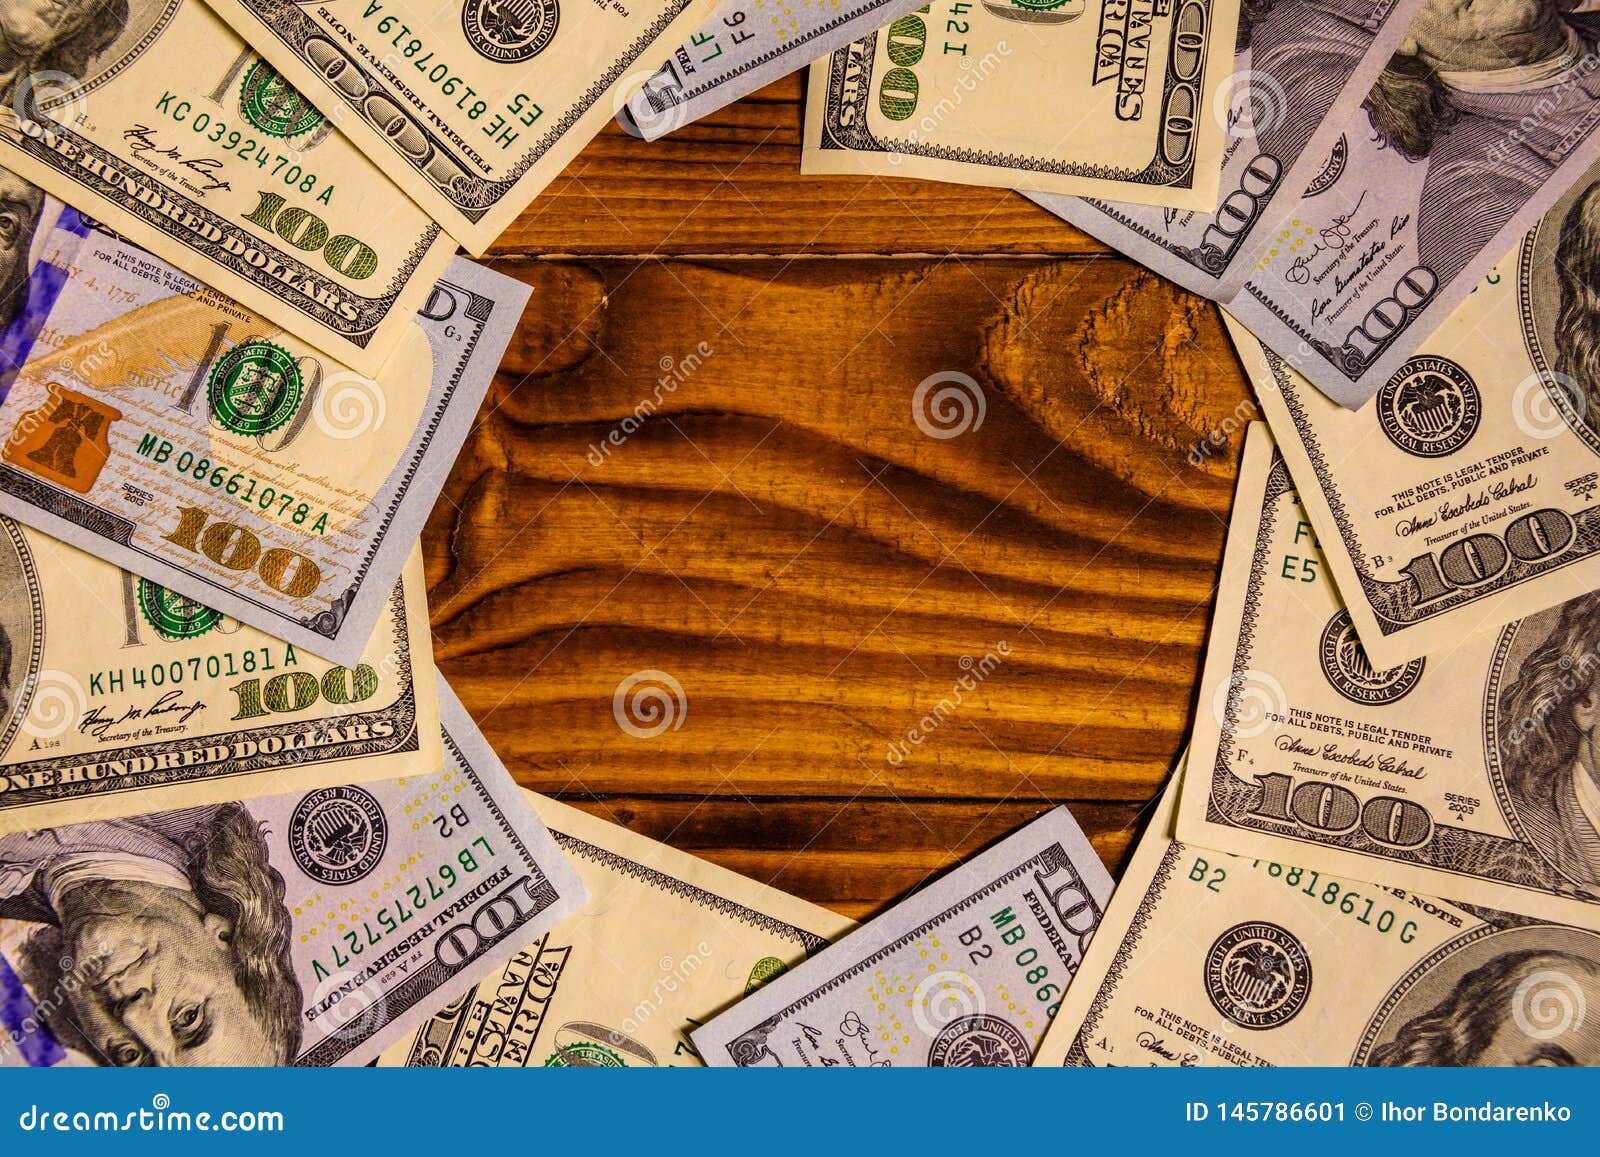 桌上的钞票和眼镜 库存图片. 图片 包括有 银行, 收入, 现金, 玻璃, 经济, 货币, 商业, 班卓琵琶 - 219511833